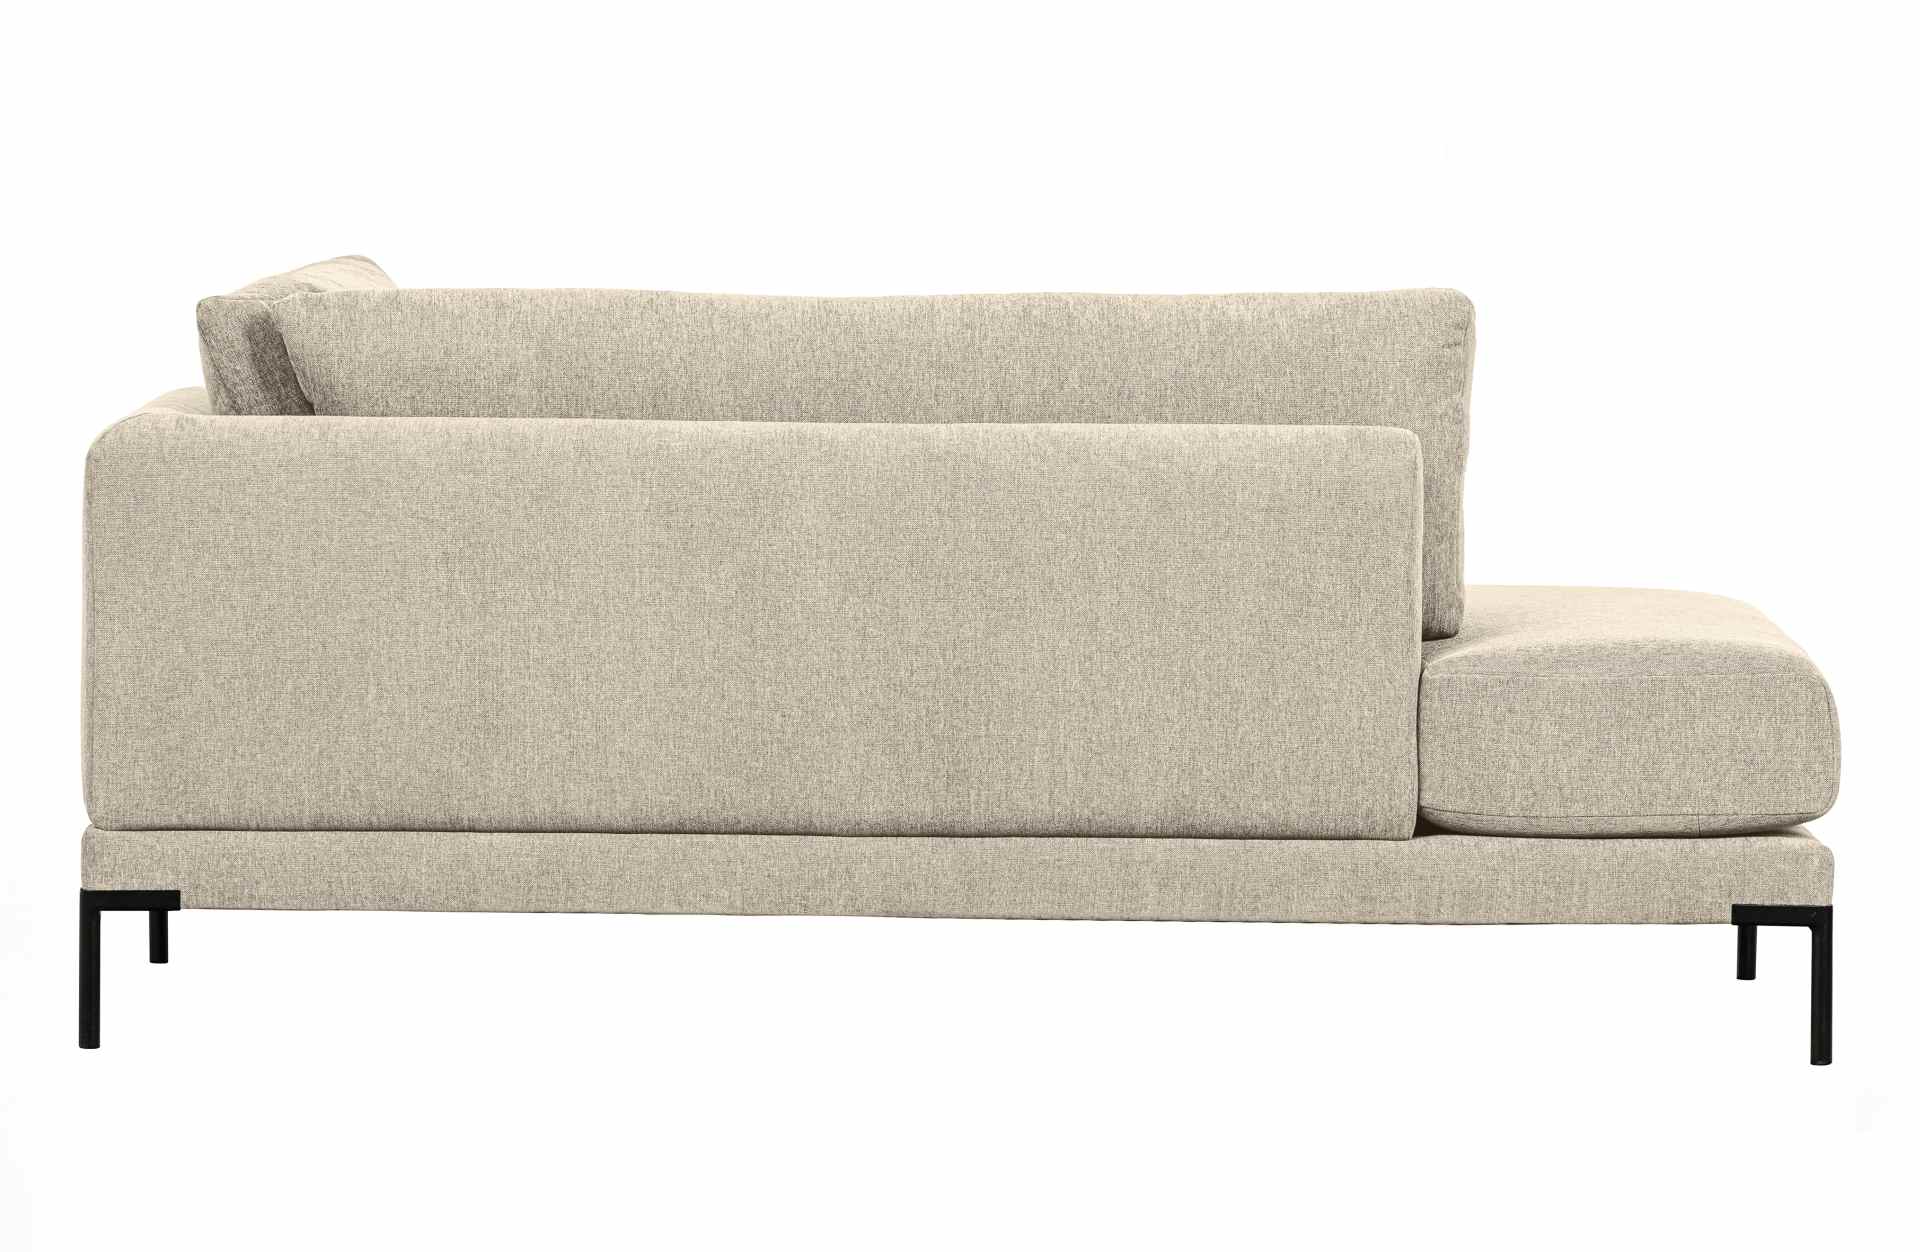 Das Modulsofa Couple Lounge überzeugt mit seinem modernen Design. Das Lounge Element mit der Ausführung Links wurde aus Melange Stoff gefertigt, welcher einen einen Sand Farbton besitzen. Das Gestell ist aus Metall und hat eine schwarze Farbe. Das Element